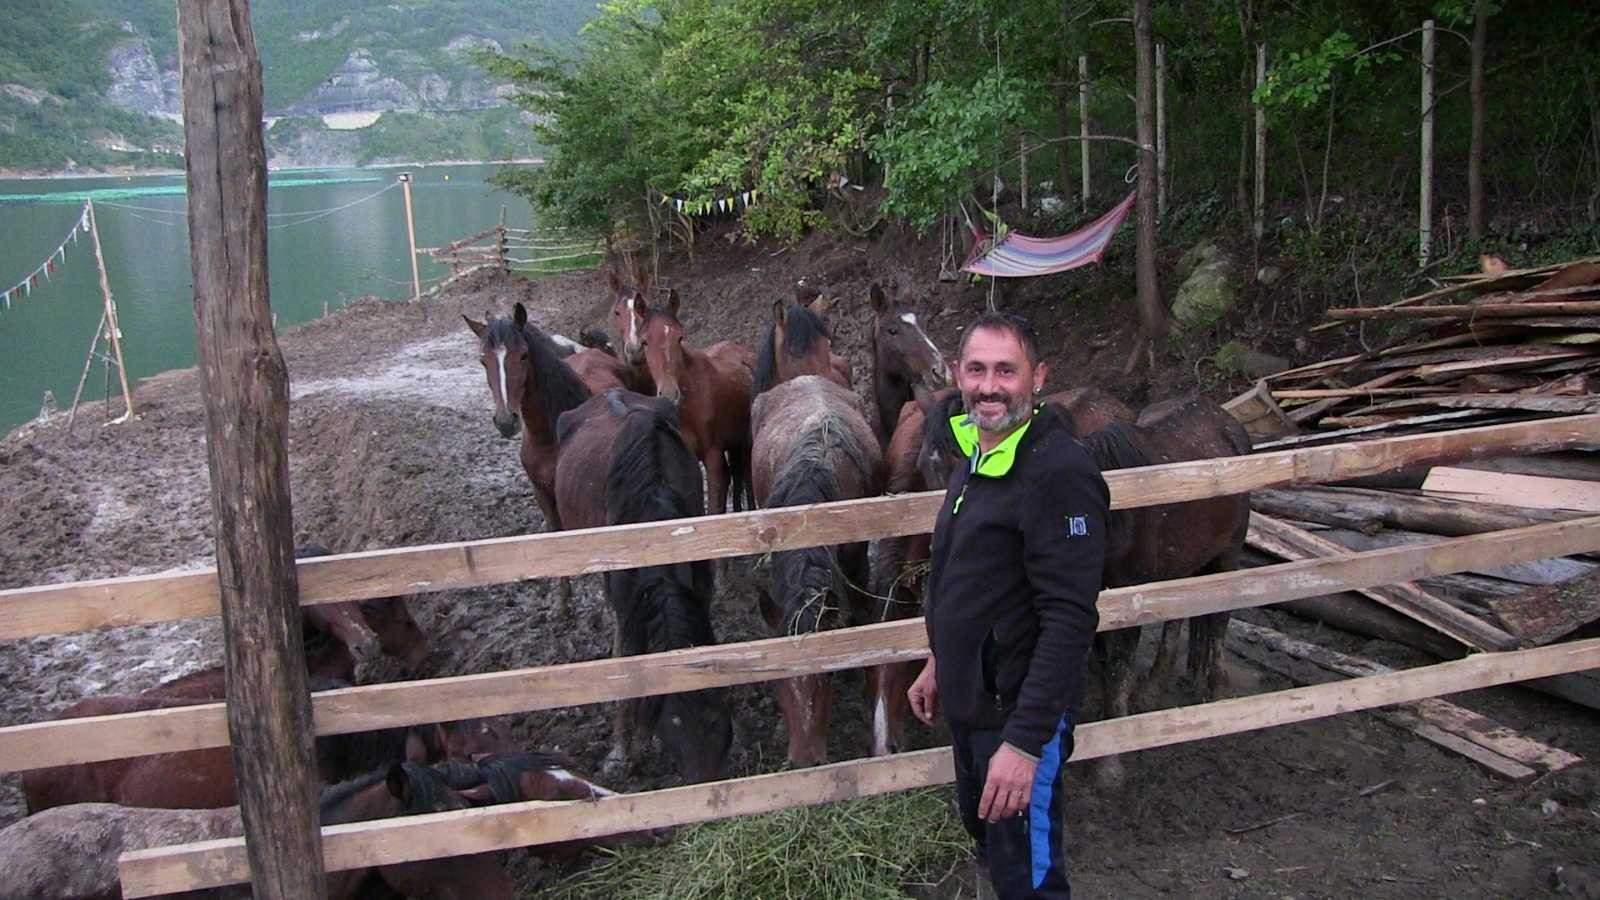 Artvin’de ölüme terk edilen atlara barınak bulunamayınca genç turizmci tesisini açtı #artvin